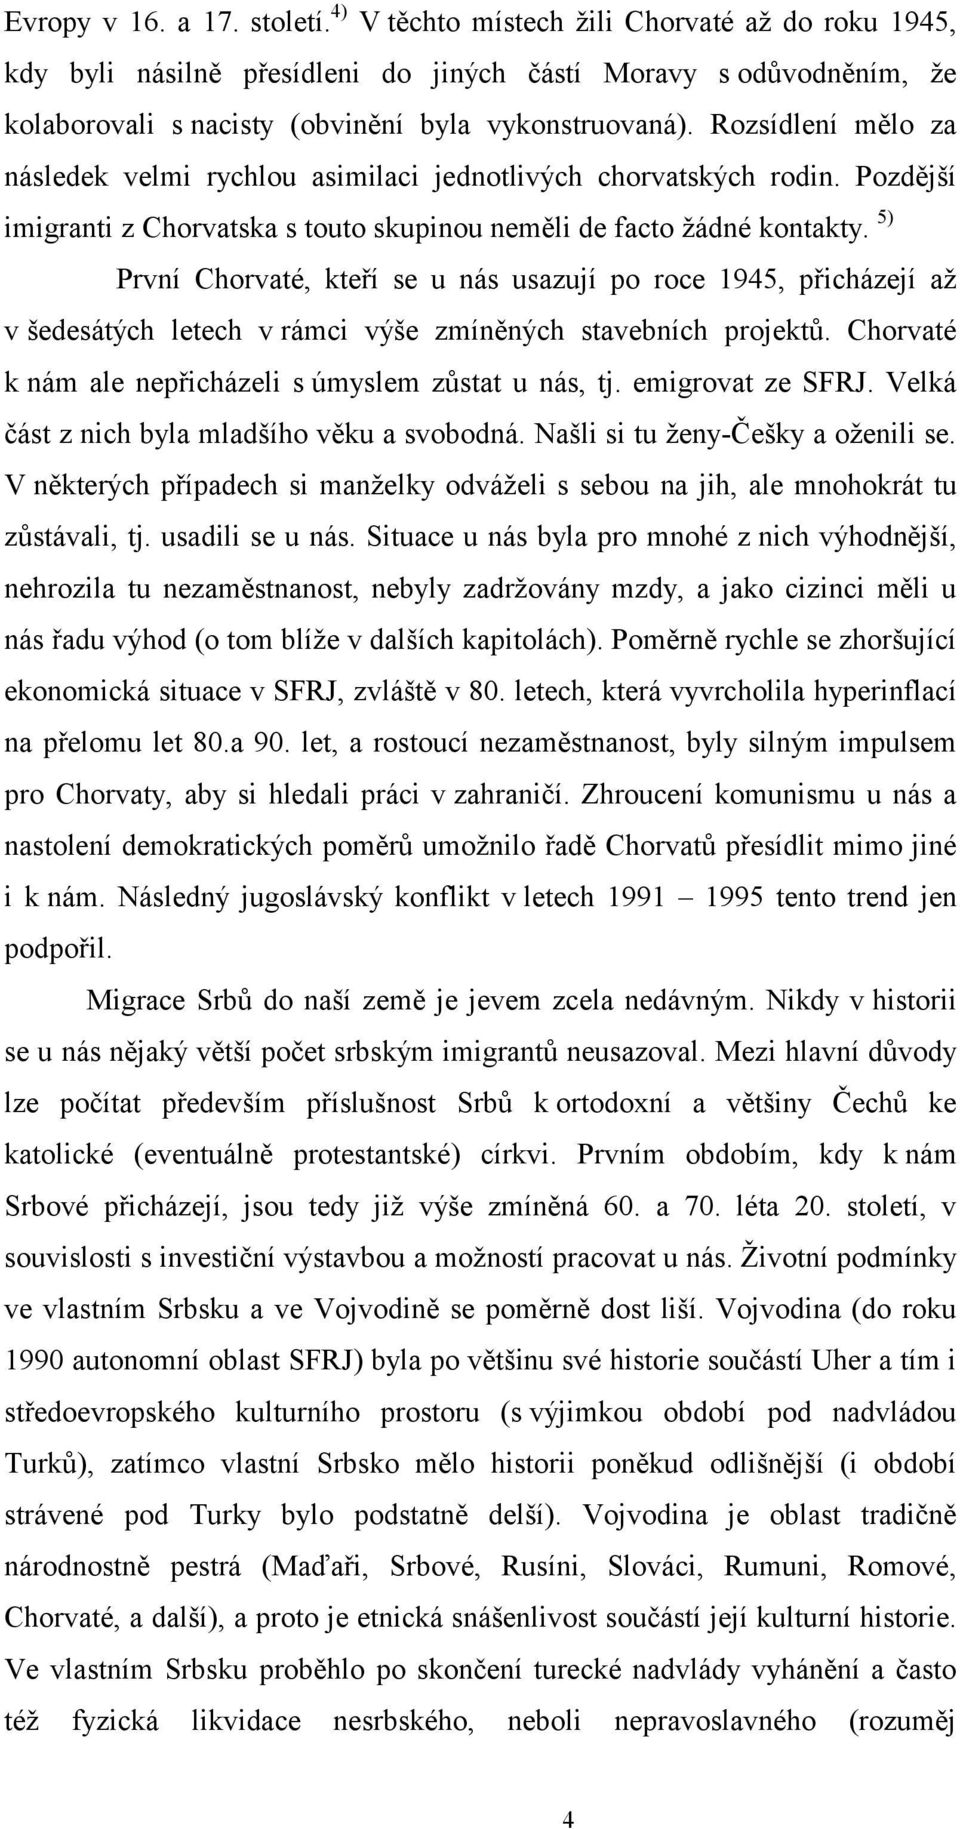 Rozsídlení mělo za následek velmi rychlou asimilaci jednotlivých chorvatských rodin. Pozdější imigranti z Chorvatska s touto skupinou neměli de facto žádné kontakty.